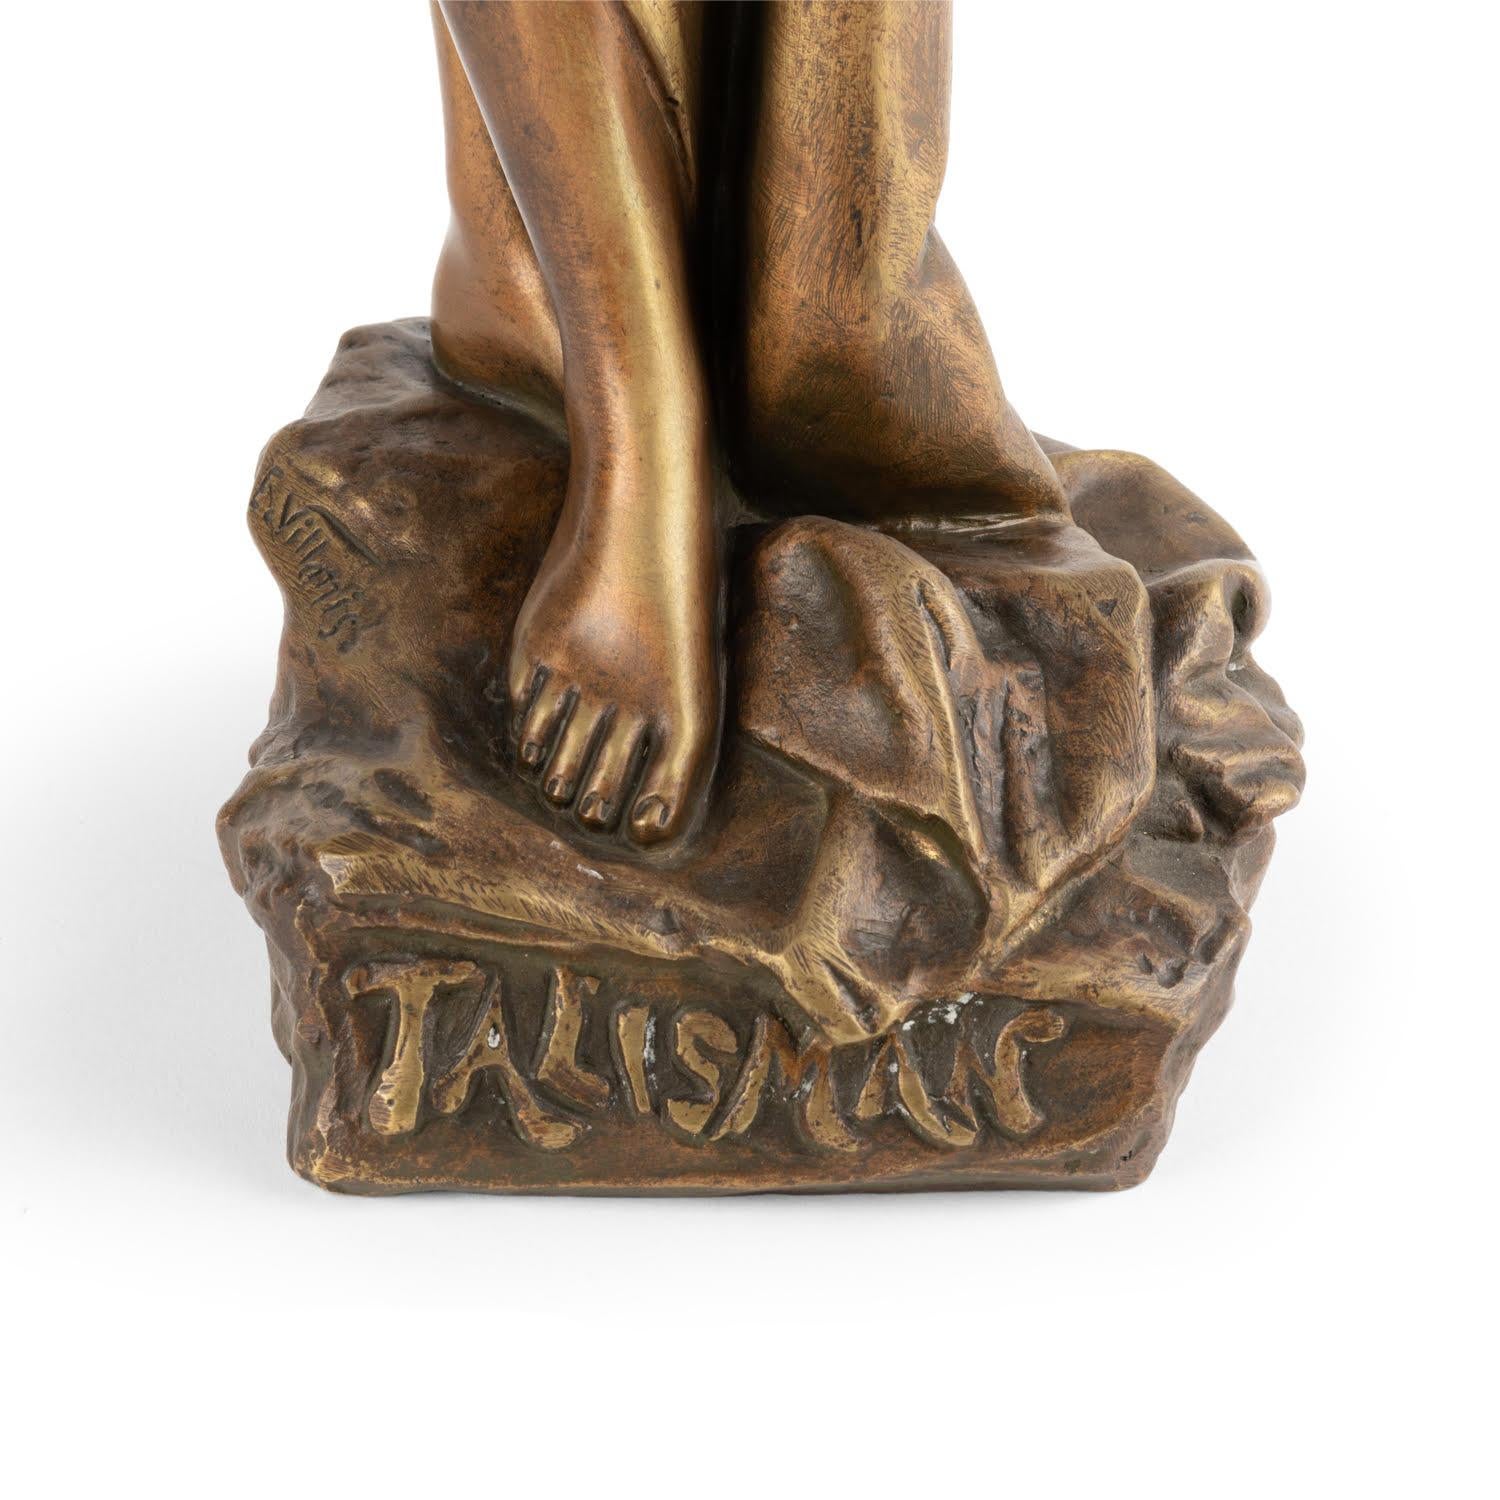 Sculpture en bronze d'Emmanuel Villanis, 19e siècle.

Sculpture en bronze d'Emmanuel Villanis, époque Napoléon III, XIXe siècle.  
Photos :(c)inu.studio_art. 
H : 47cm, L : 18cm, P : 13cm